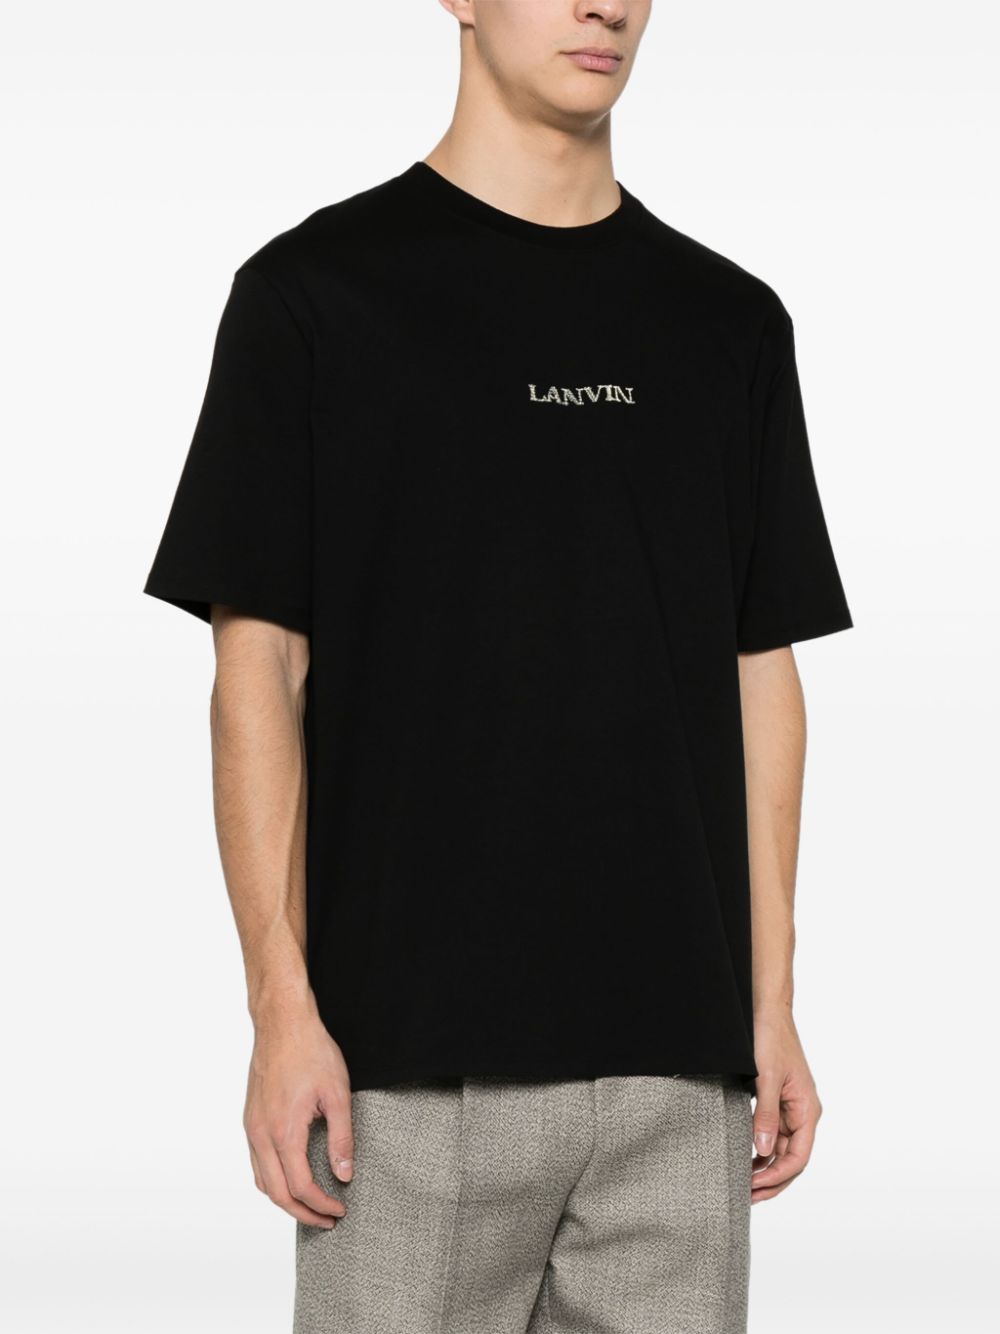 Lanvin - T-shirt noir en coton à logo brodé - Lothaire